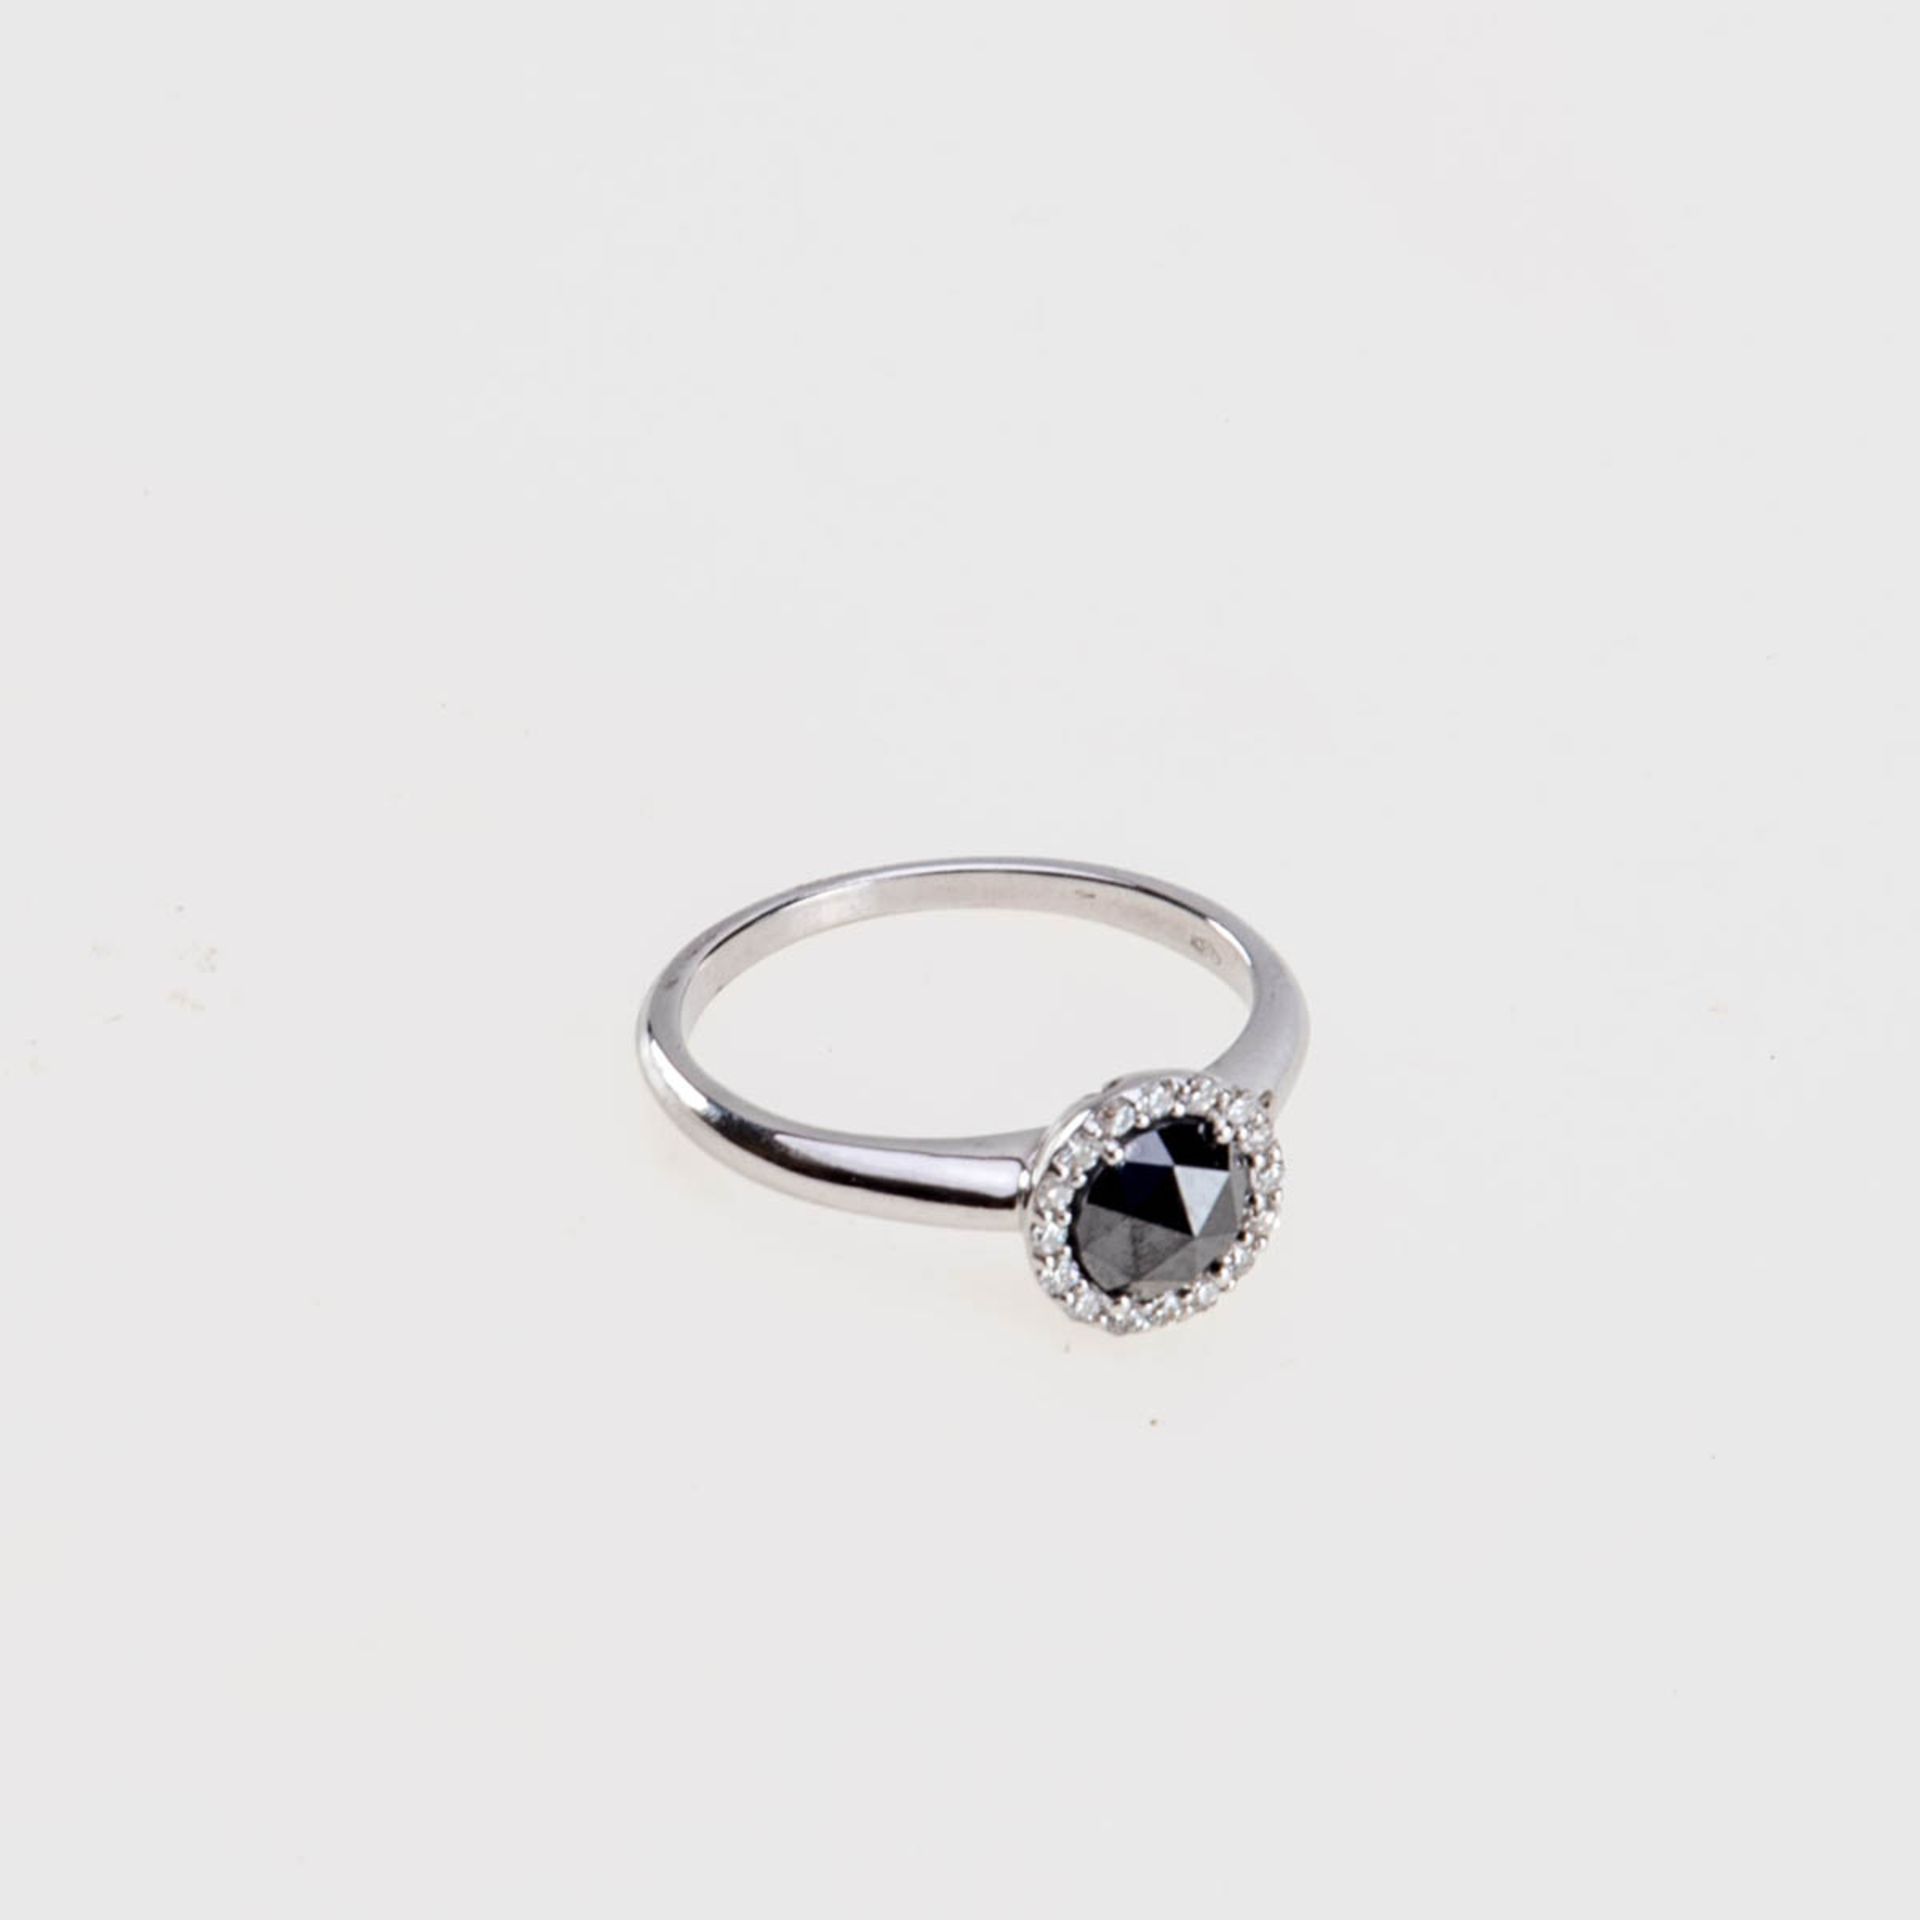 Ring mit schwarzem Diamanten 750er Weißgold. Schmale Ringschiene, runder Ringkopf mit einem